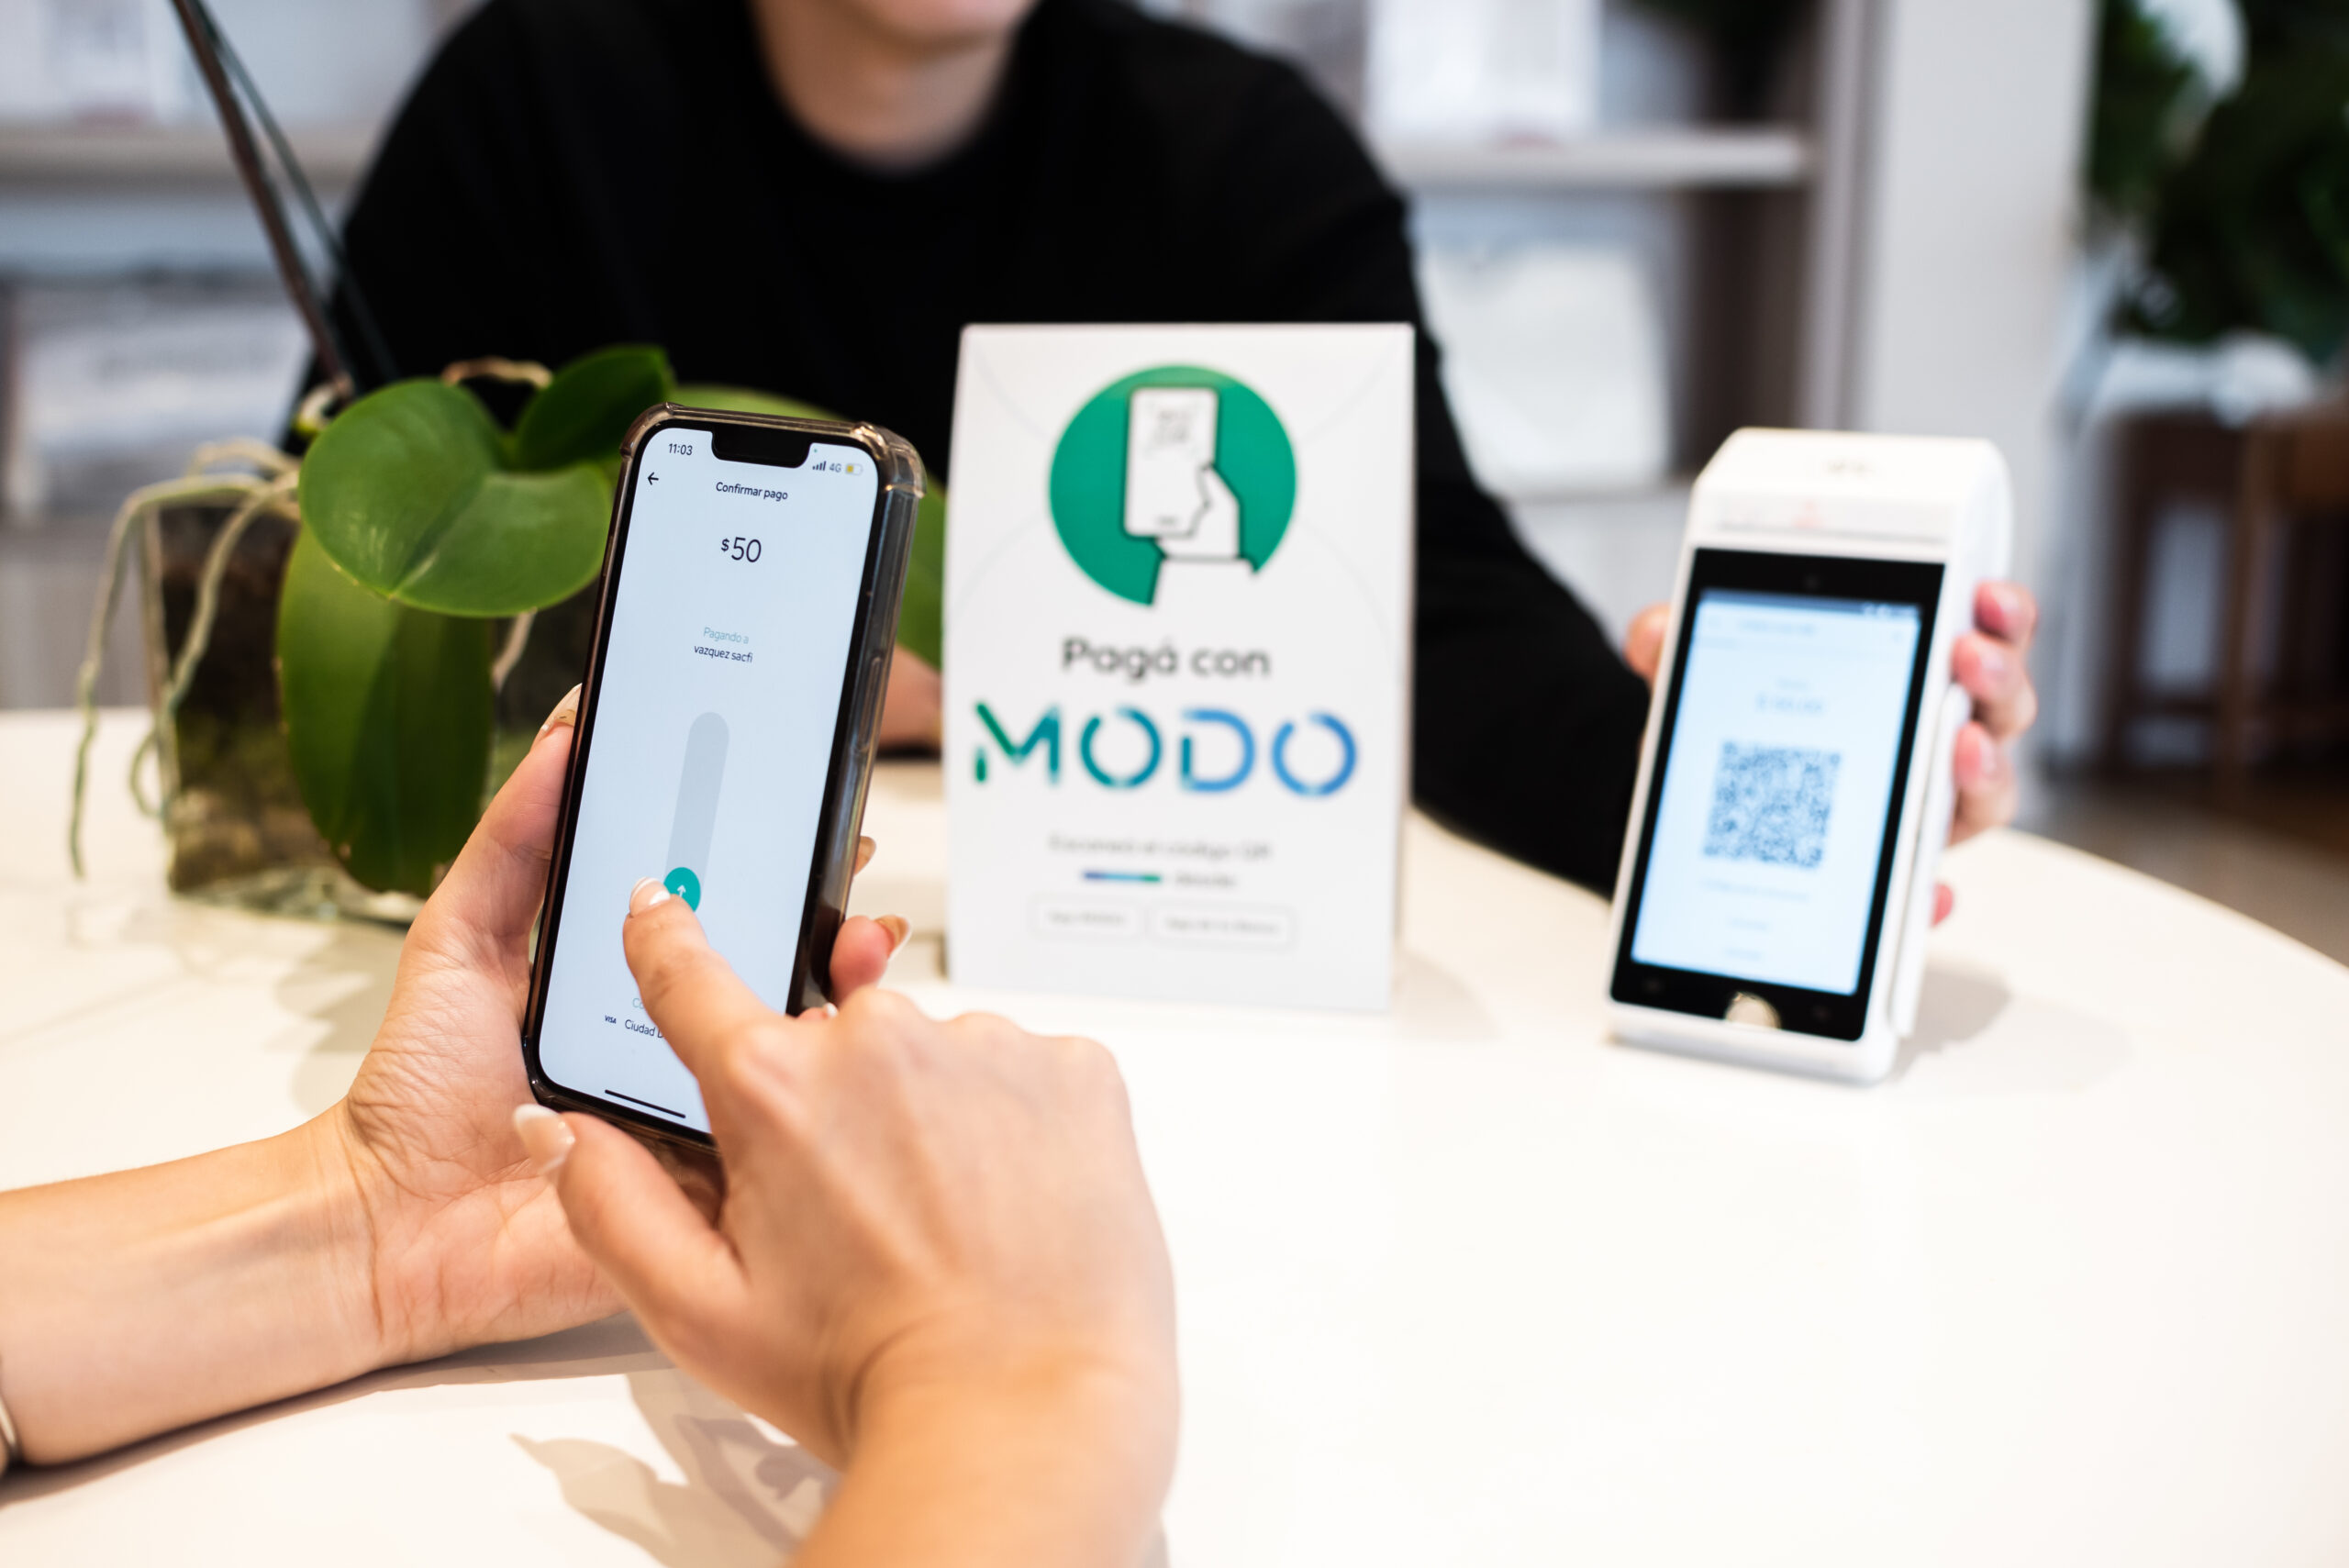 MODO celebra 1 millón de usuarios activos en solo 30 días